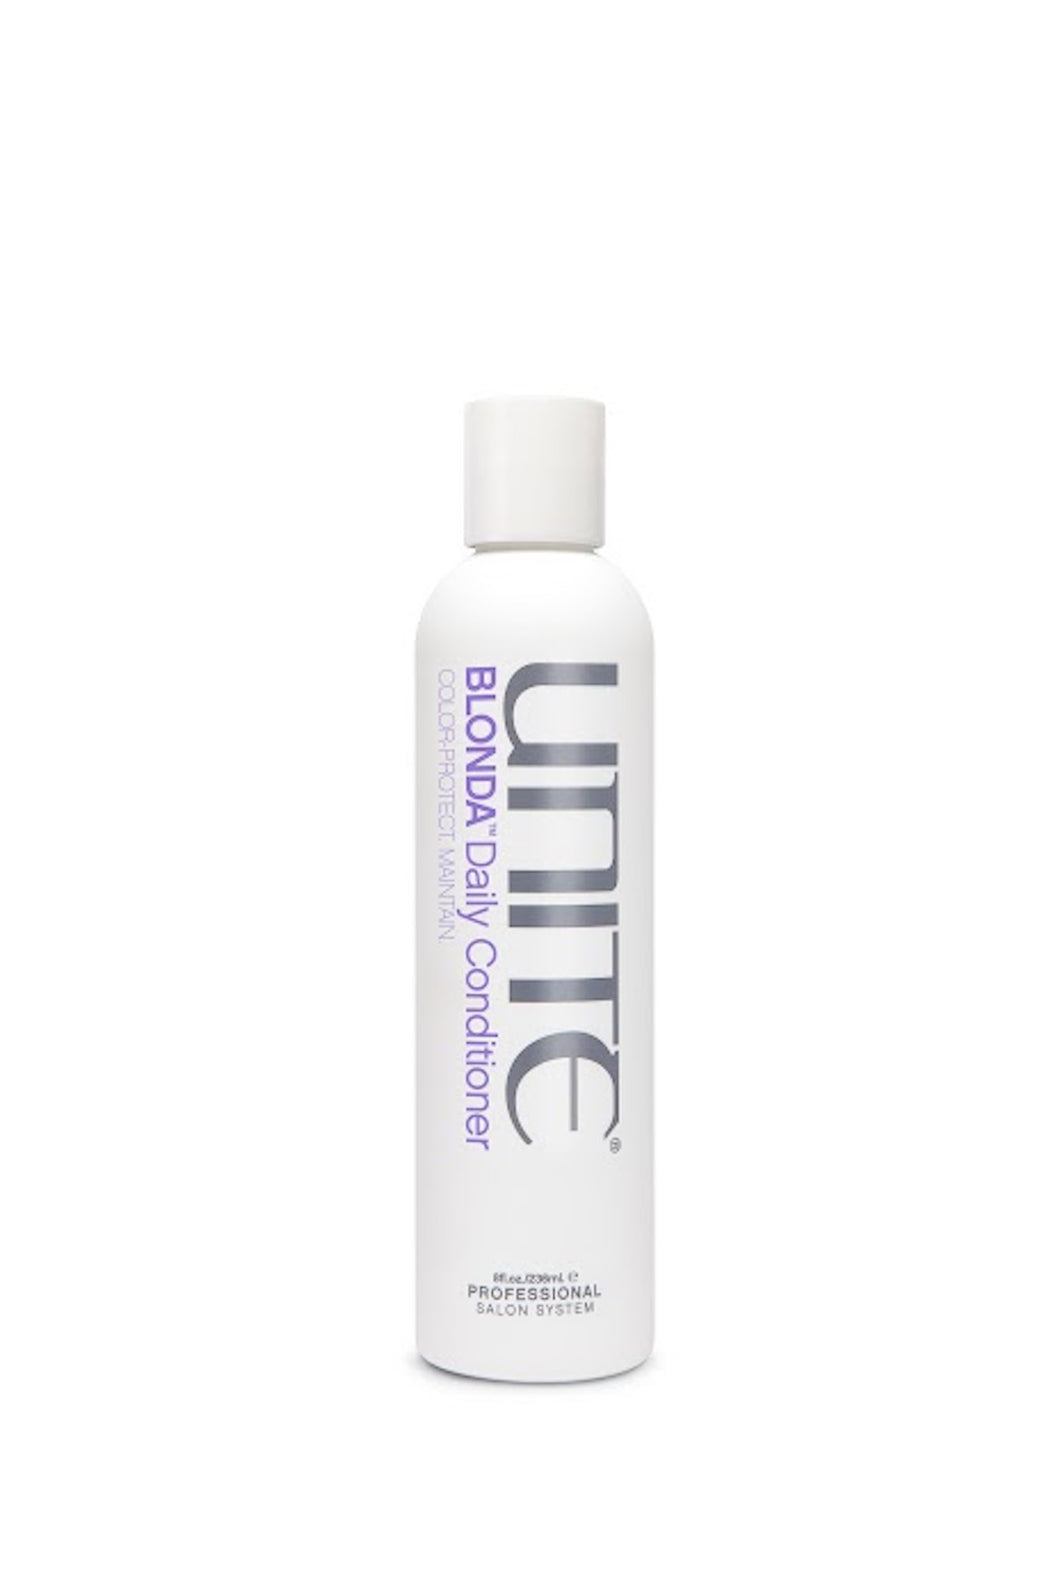 Unite - BLONDA Daily Purple Conditioner white 8 oz. bottle with white top